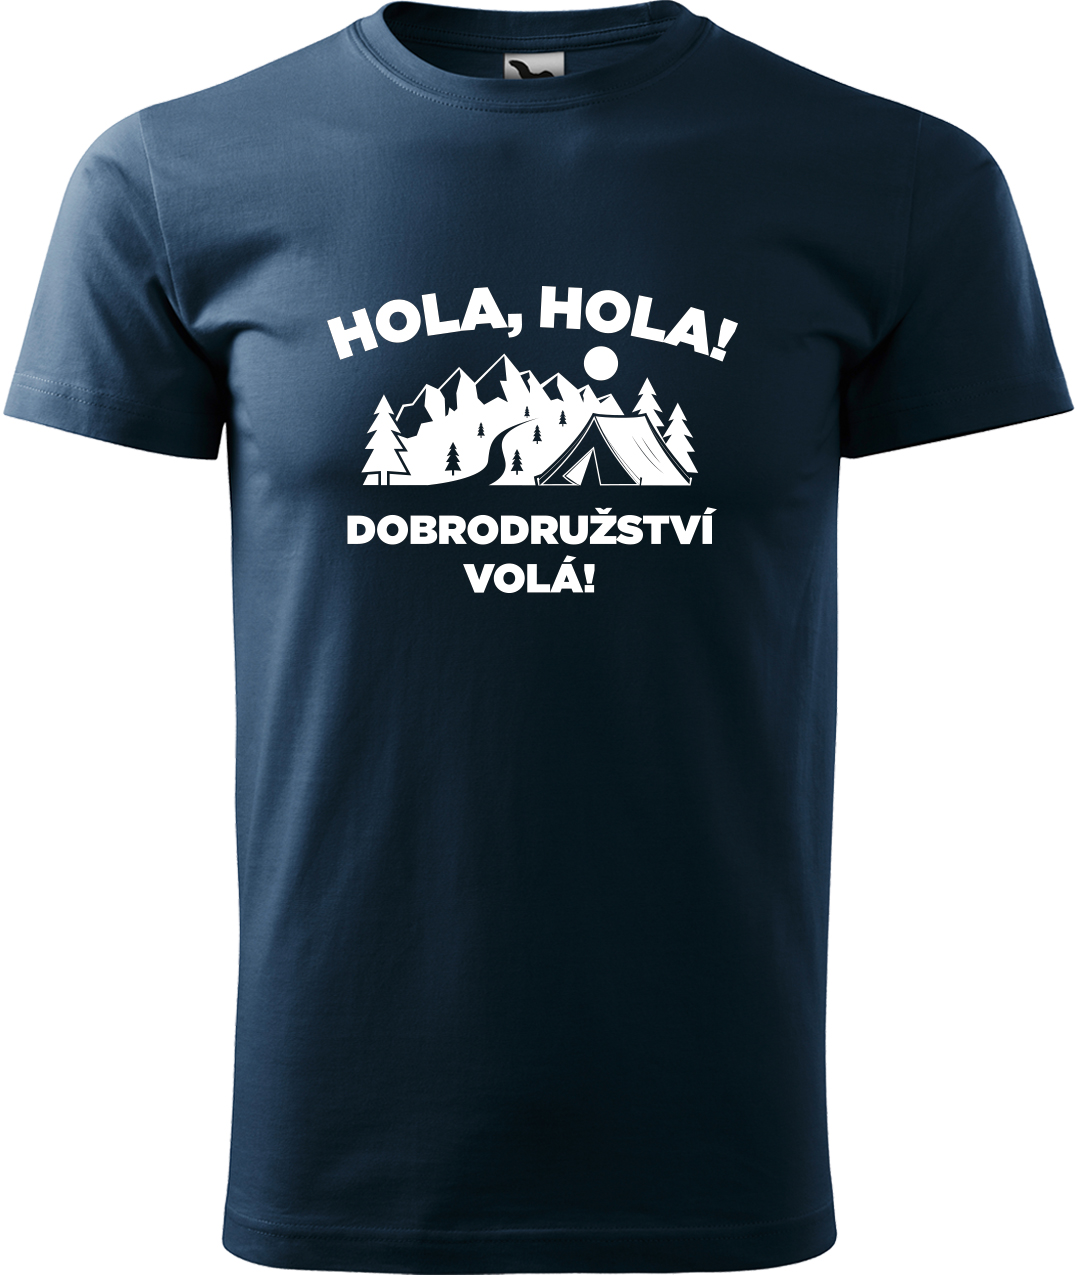 Pánské cestovatelské tričko - Hola hola! Dobrodružství volá! Velikost: XL, Barva: Námořní modrá (02), Střih: pánský